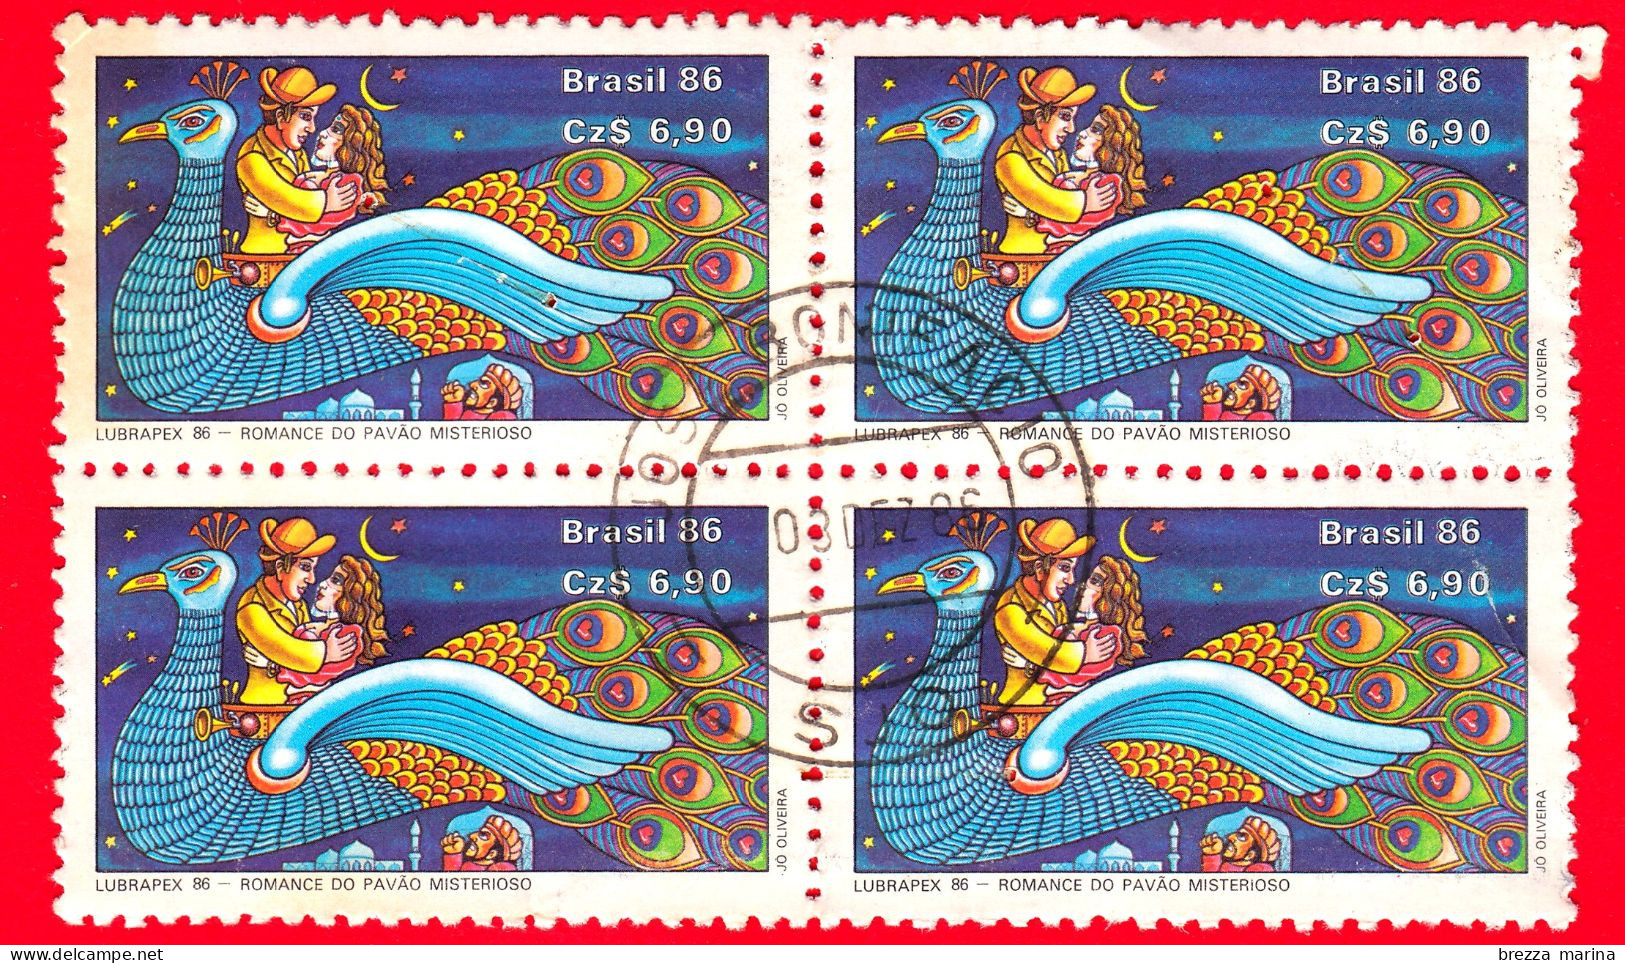 BRASILE - Usato - 1986 - Mostra Filatelica LUBRAPEX '86 - LETTERATURA CORDEL - Misterioso Romanzo Di Pavone - 6.90 - Qua - Used Stamps